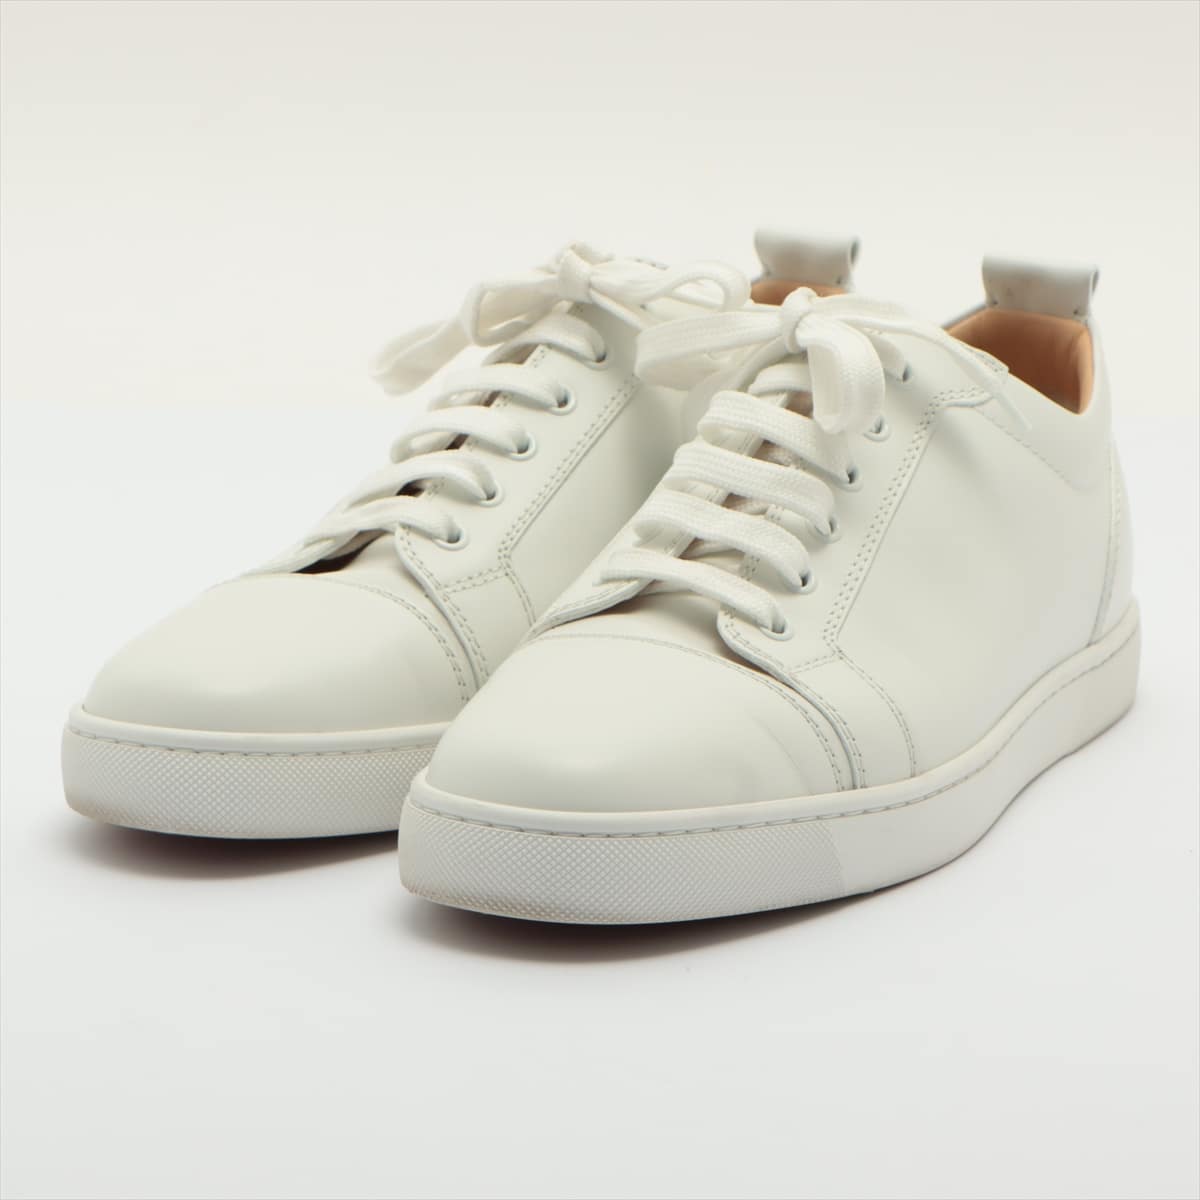 Christian Louboutin Louis Jr. Leather Sneakers 41 1/2 Men's White Flat 1130548